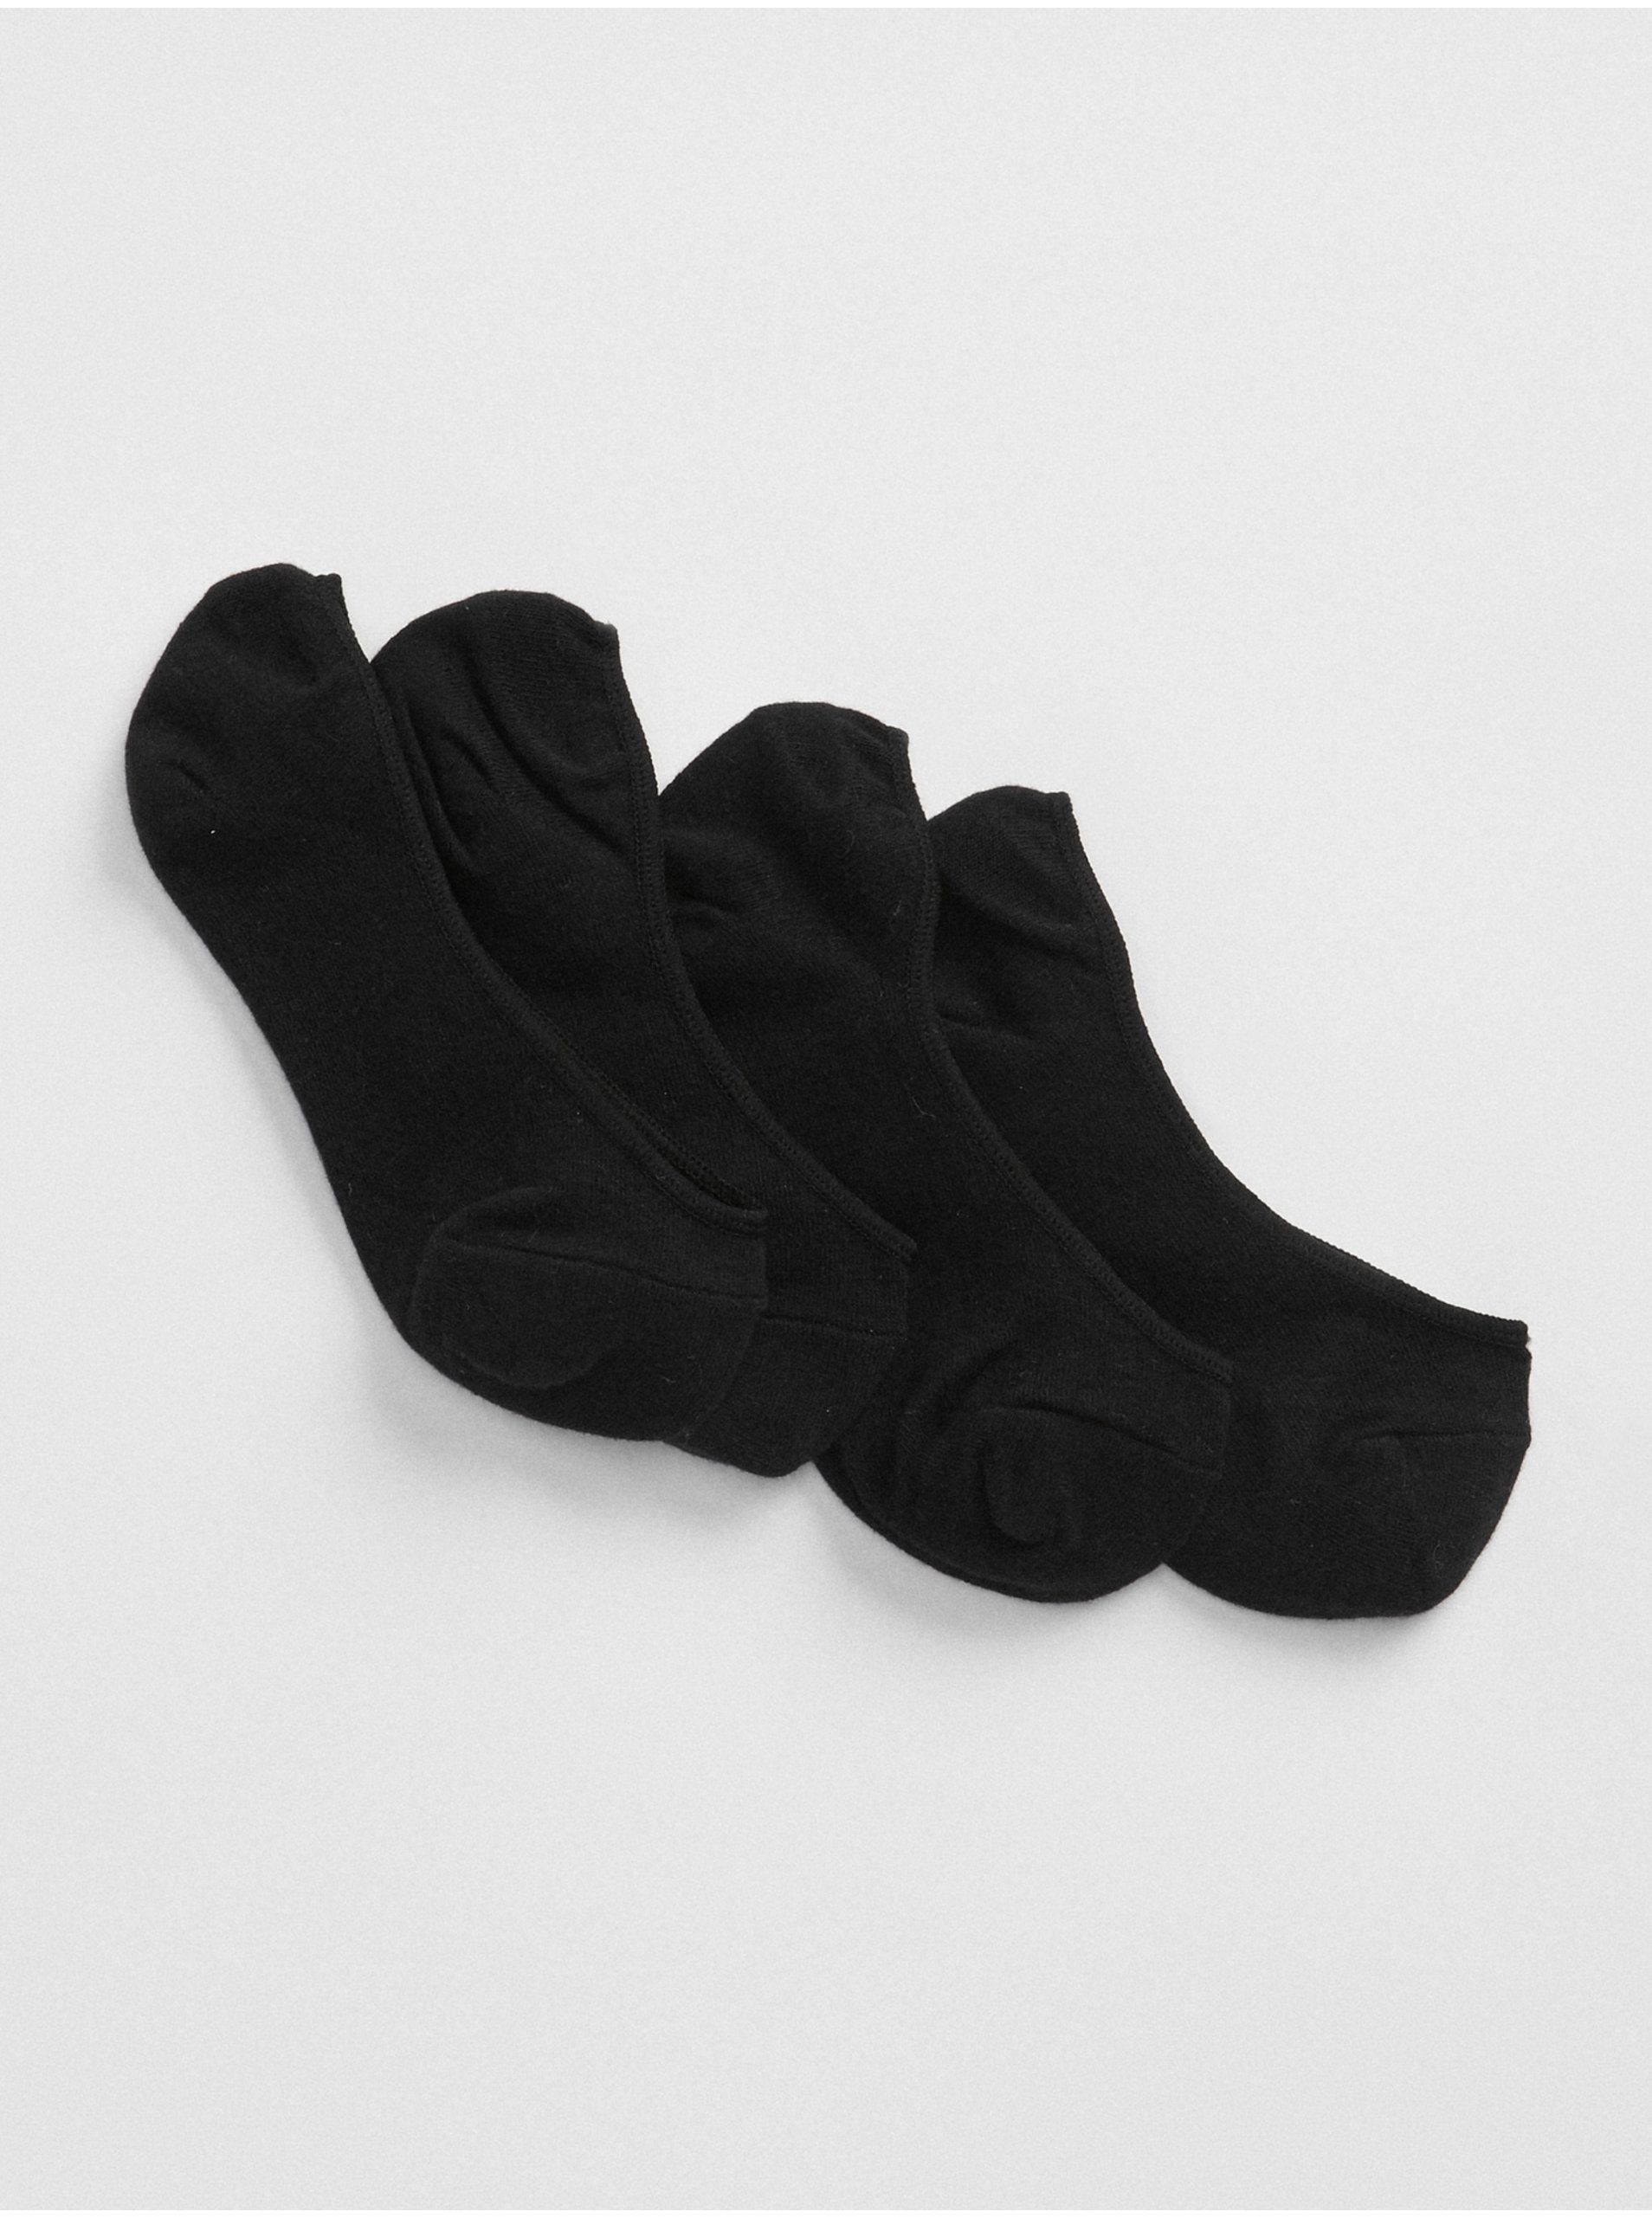 Lacno Ponožky no-show socks, 2 páry Čierna